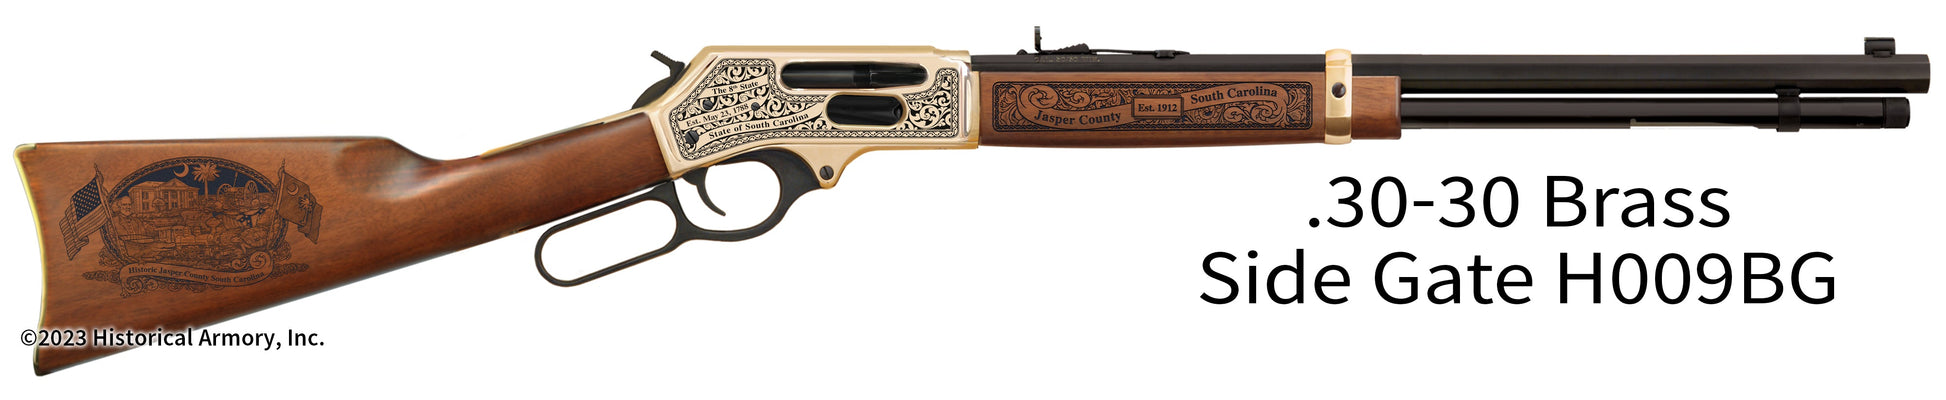 Jasper County South Carolina Engraved Henry .30-30 Brass Side Gate Rifle